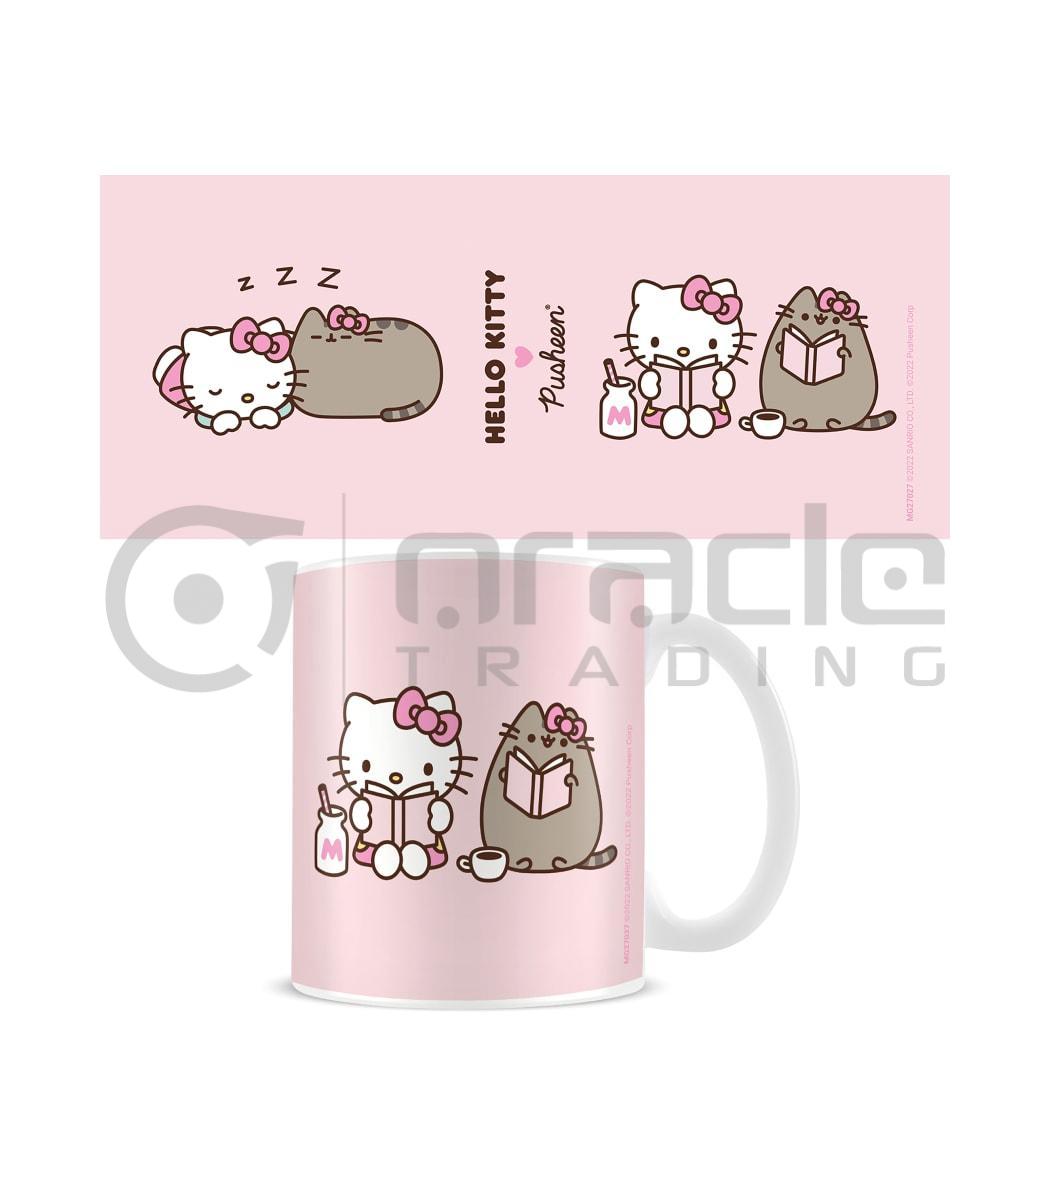 Hello Kitty x Pusheen Mug - Sleepy